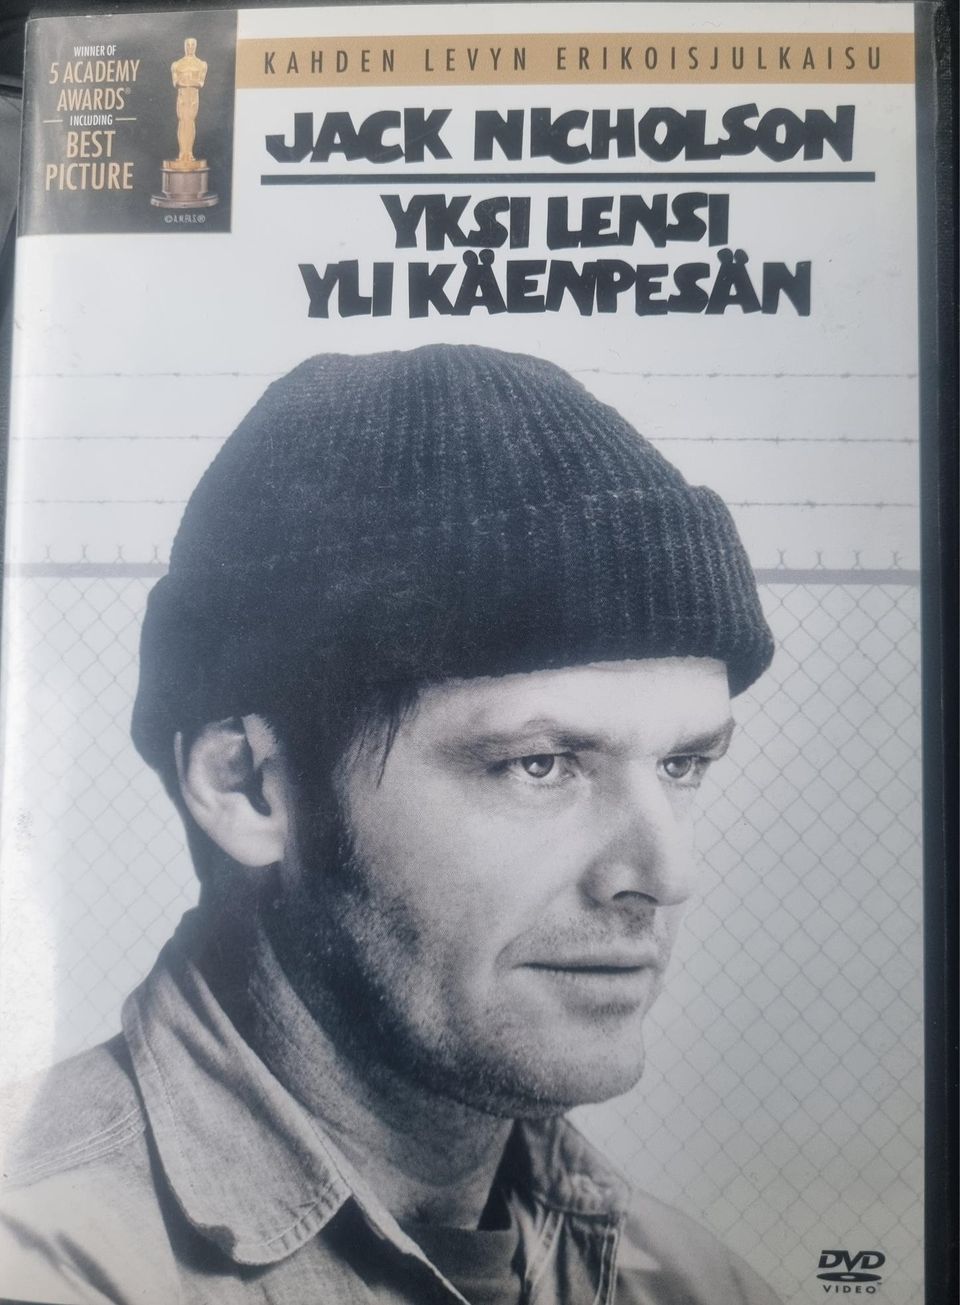 Yksi Lensi Yli Käenpesän 2kpl Dvd